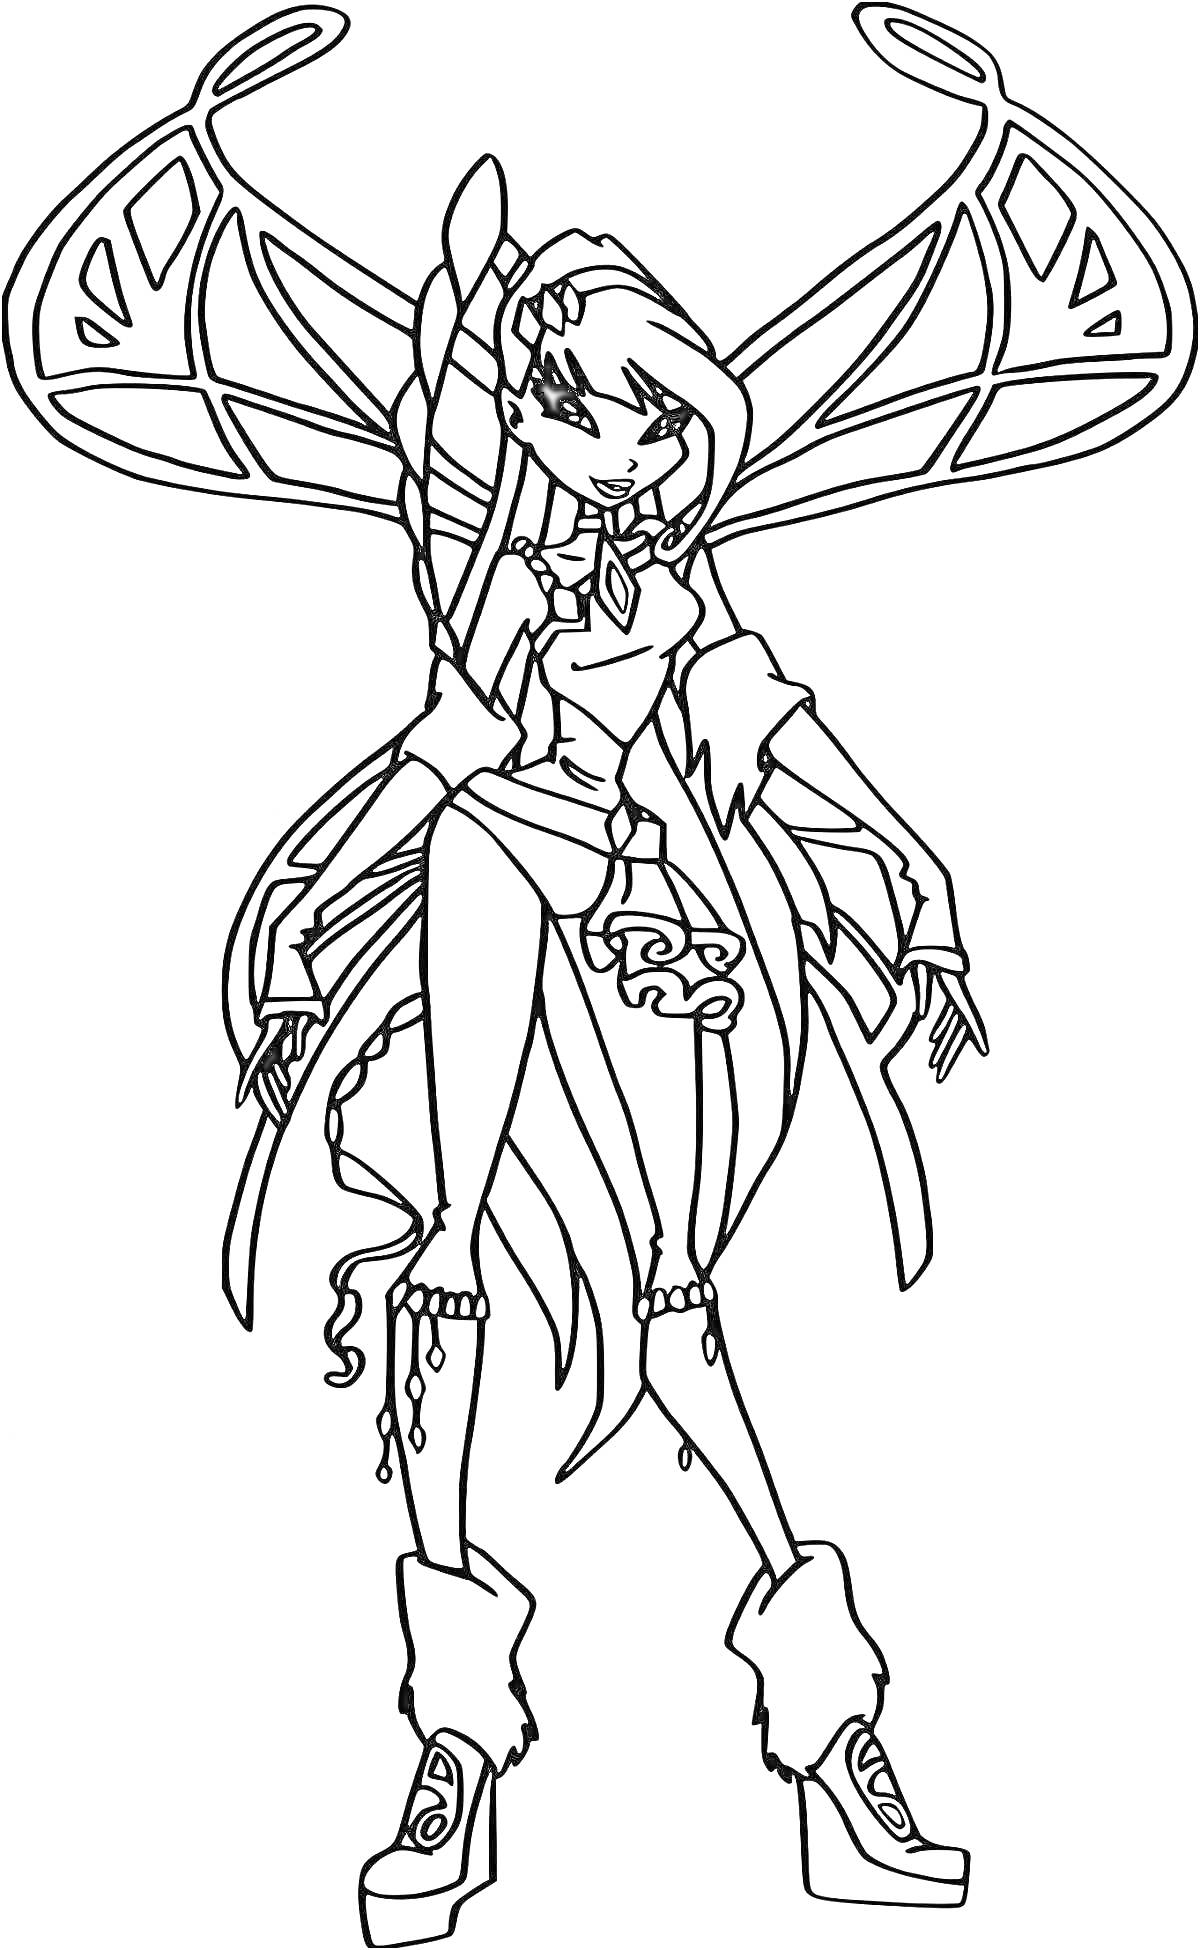 Раскраска Муза Винкс с крыльями, волшебной одеждой, длинными косами и сапогами на каблуке